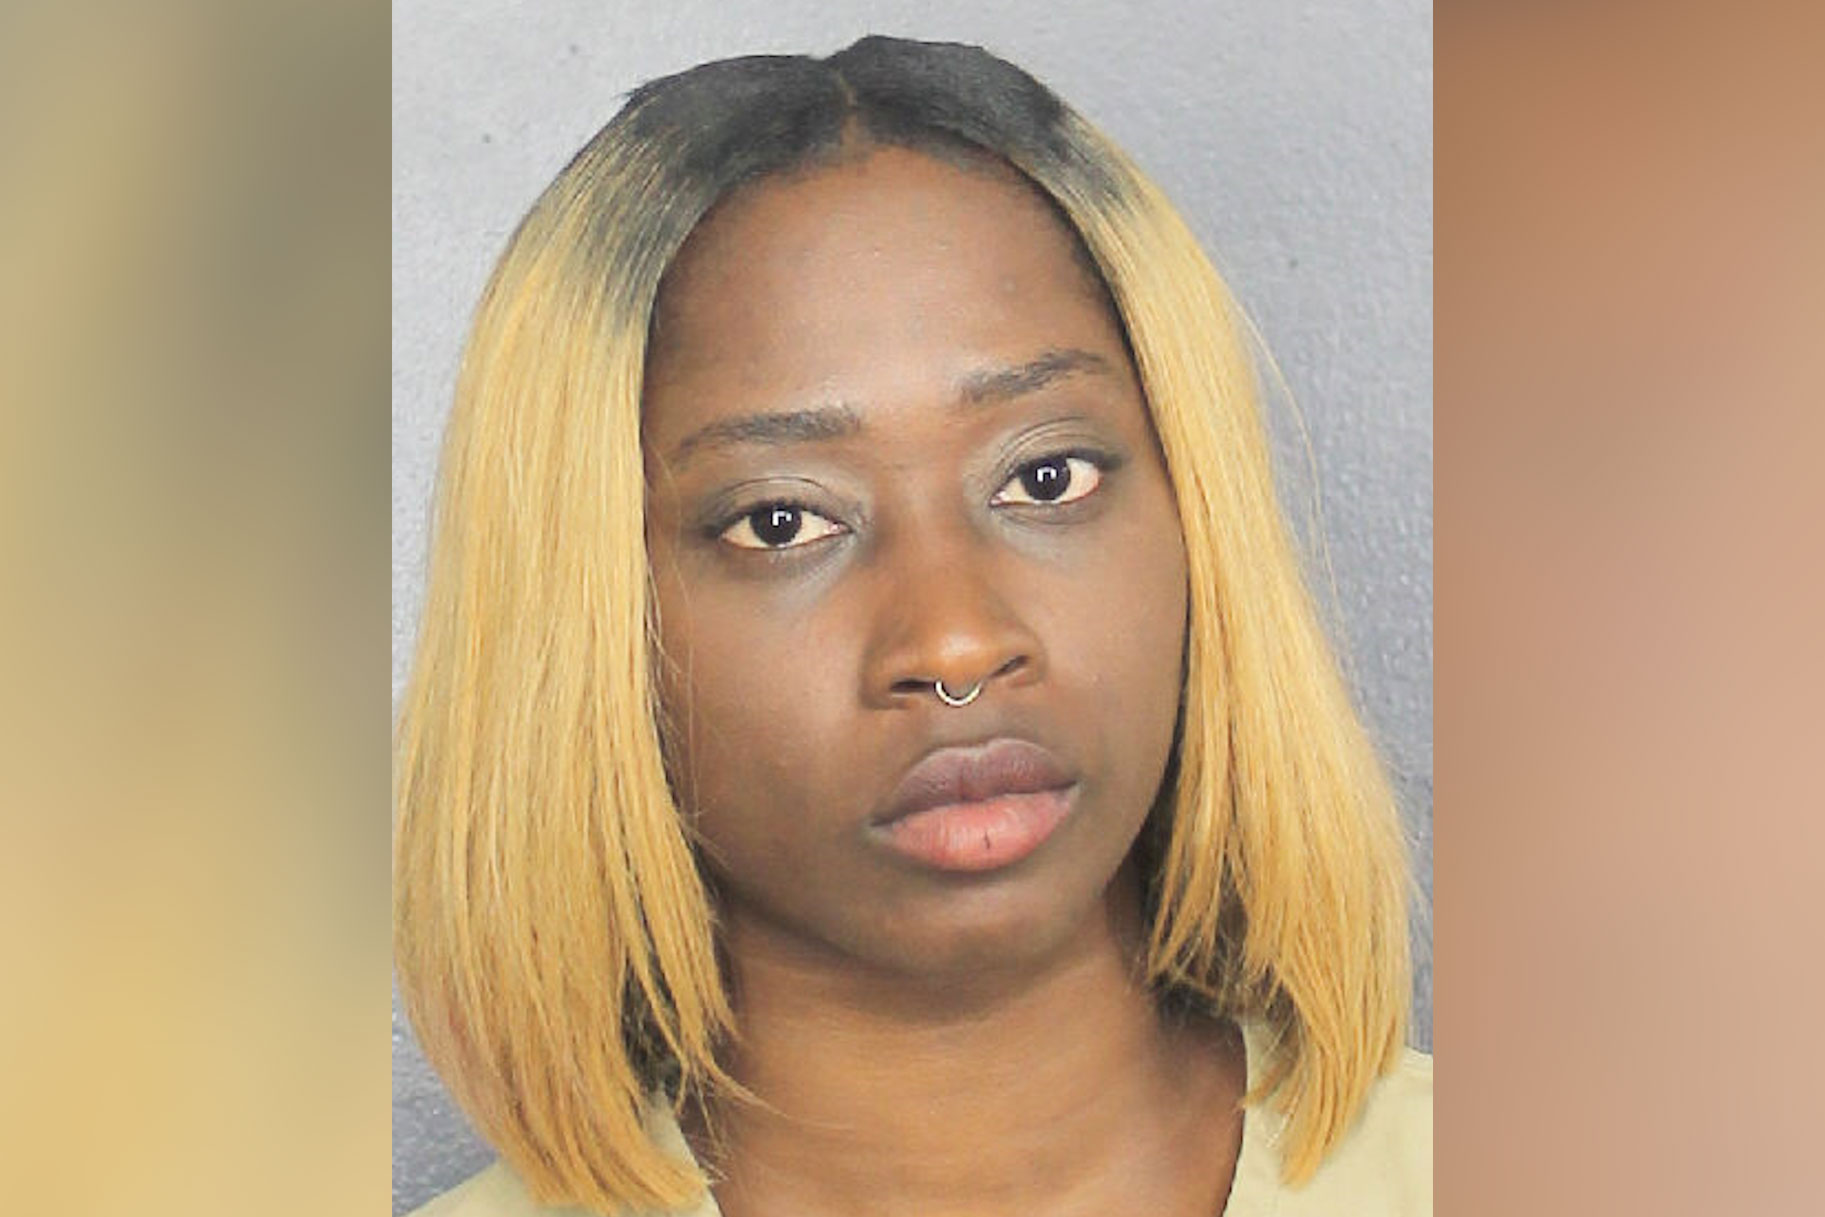 La mare de Florida va deixar la mainada sola durant hores al cotxe mentre treballava al Strip Club, segons la policia